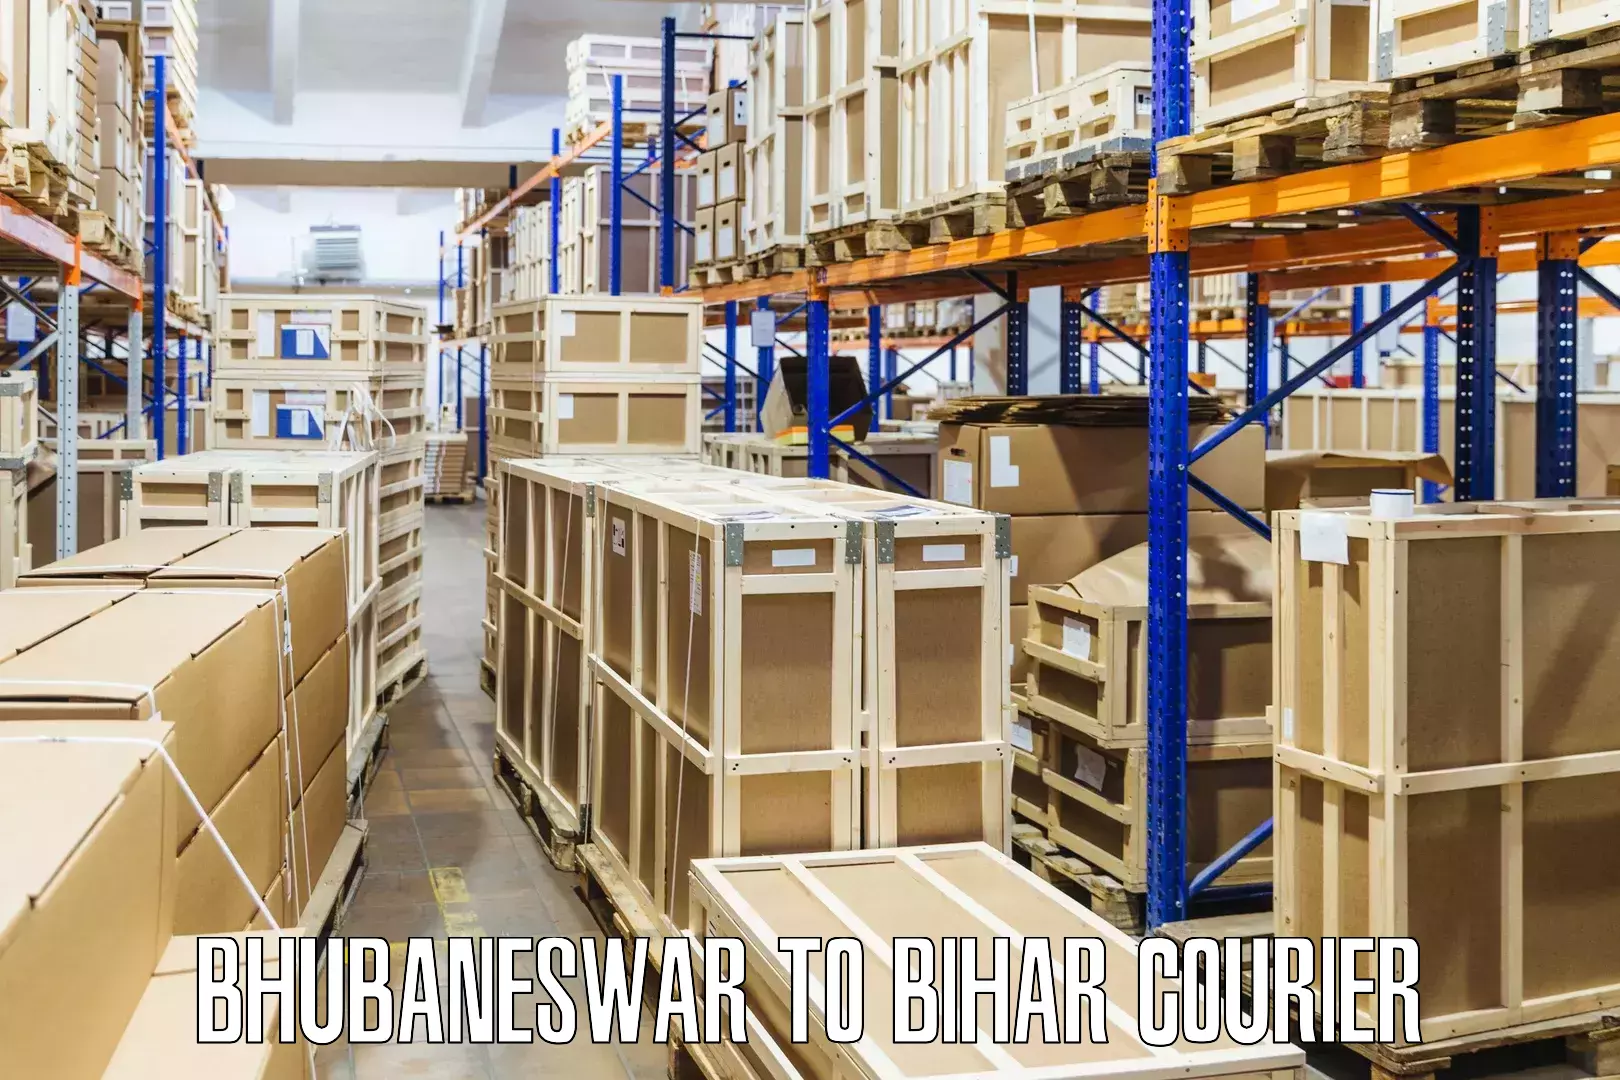 Quick parcel dispatch in Bhubaneswar to Bihar